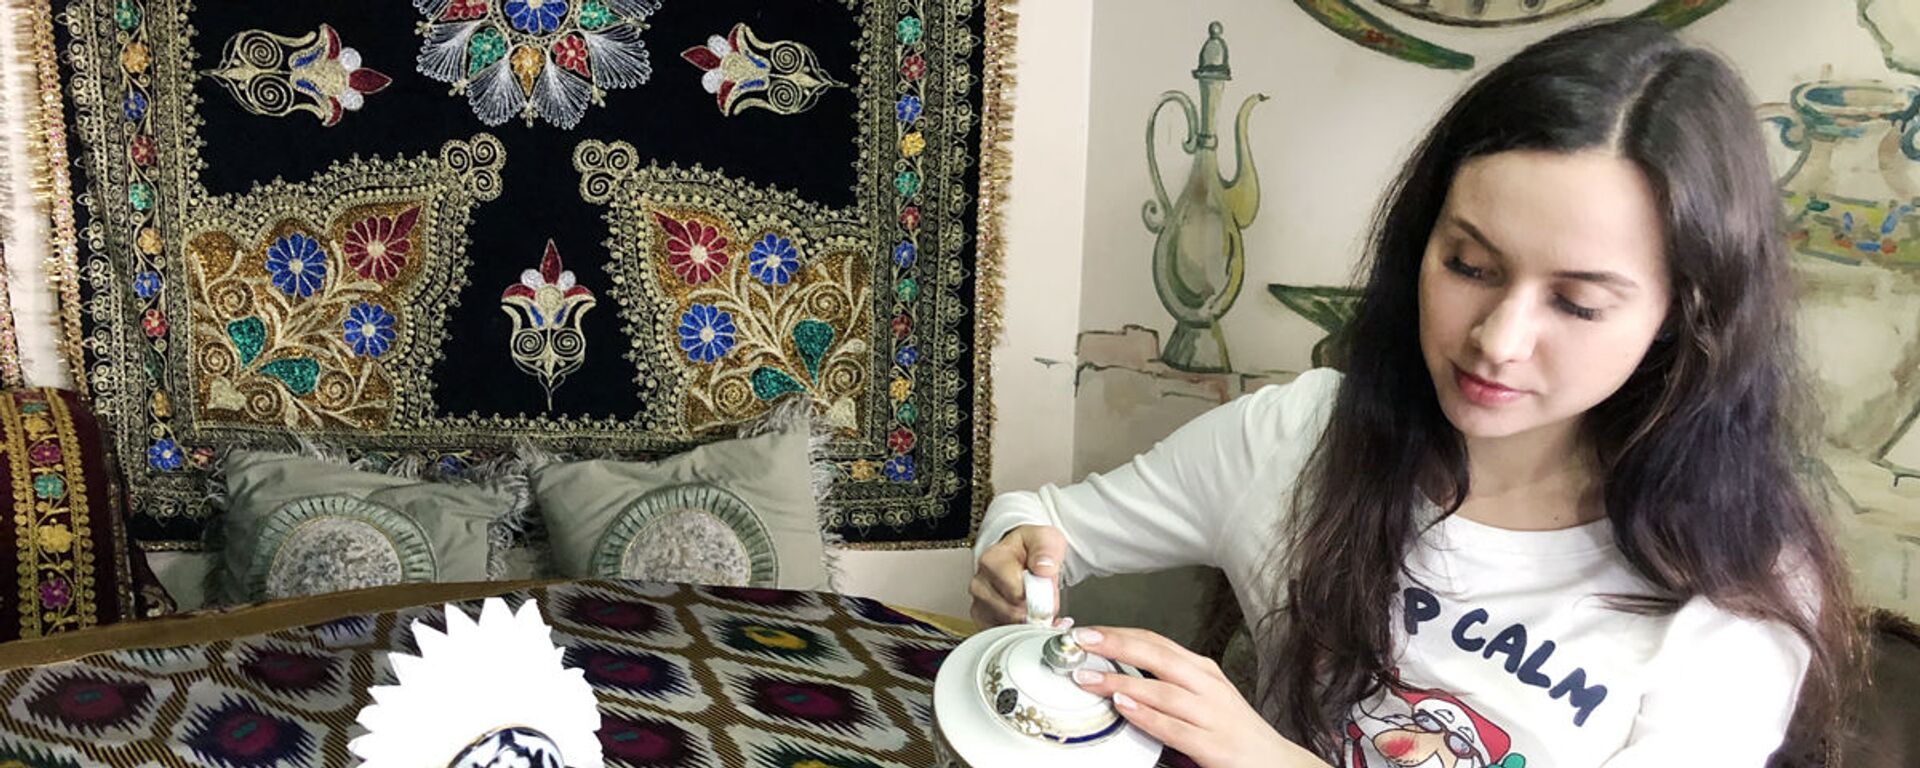 Найти кафе в Узбекистане, где заваривают листовой чай – большая удача - Sputnik Ўзбекистон, 1920, 27.11.2019